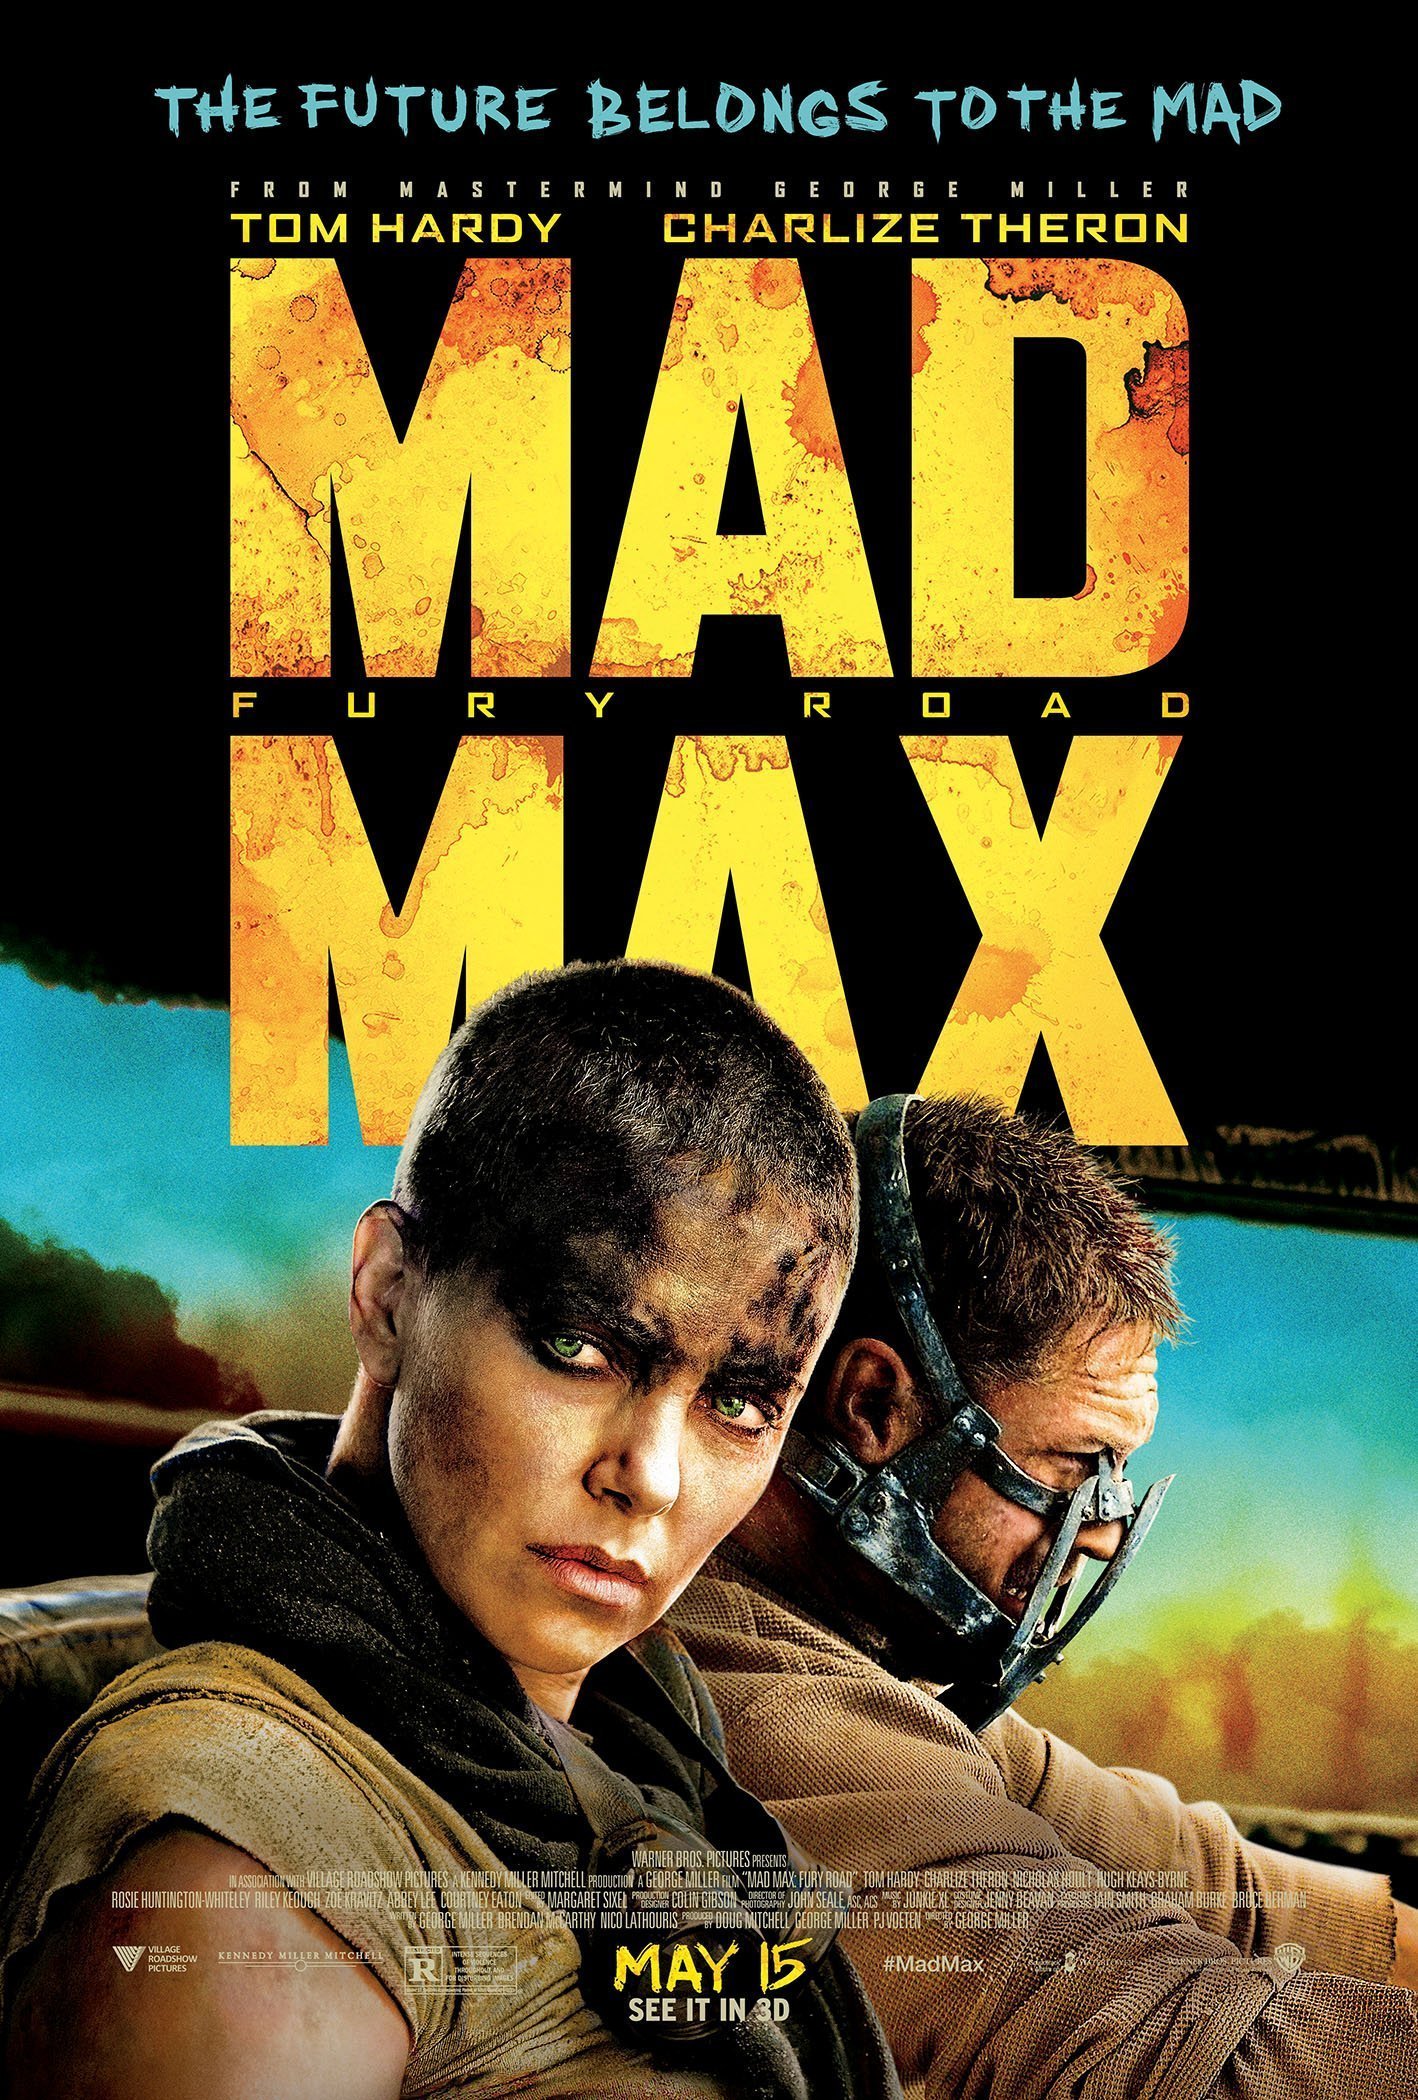 Poster du film Mad Max: Fury Road réalisé par George Miller avec la tagline "The Future belongs to the Mad"